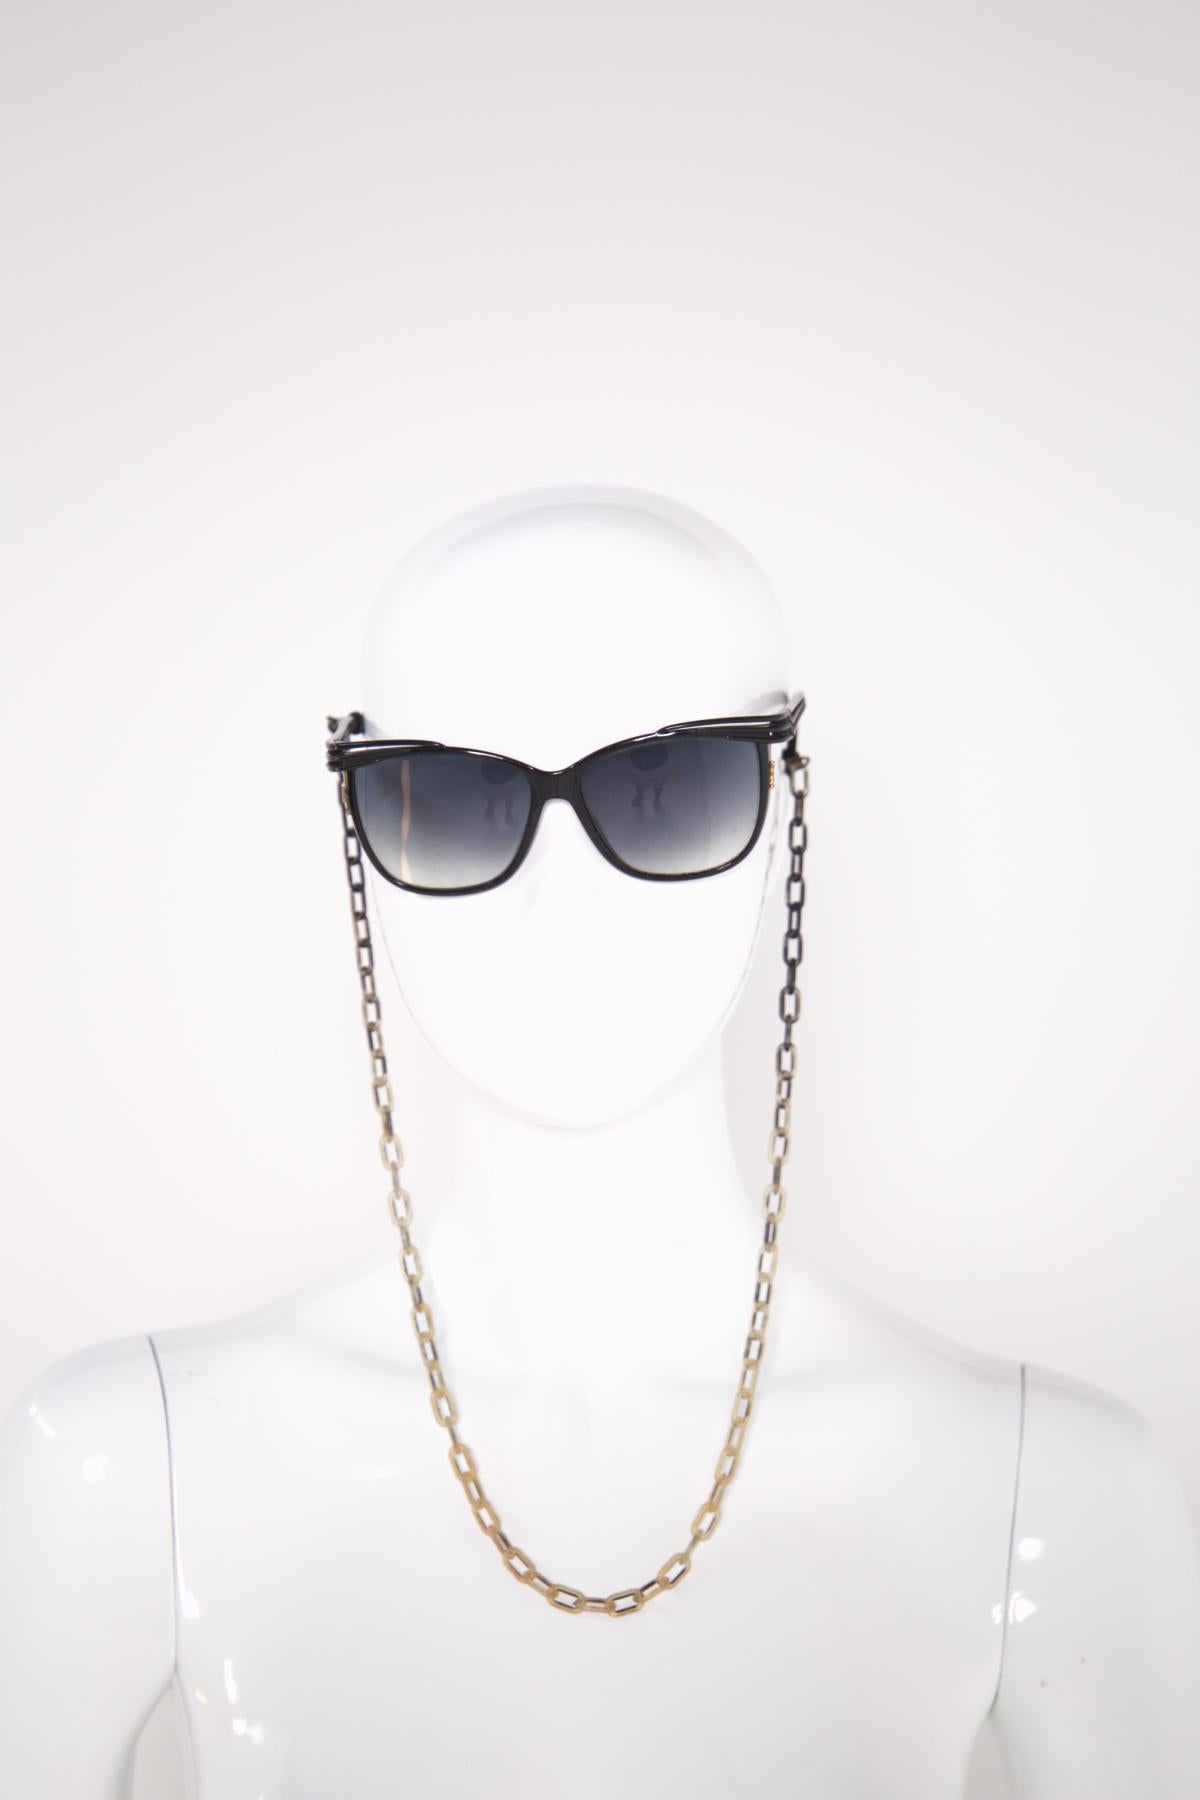 Yves Saint Laurent Vintage Chic Sunglasses 2